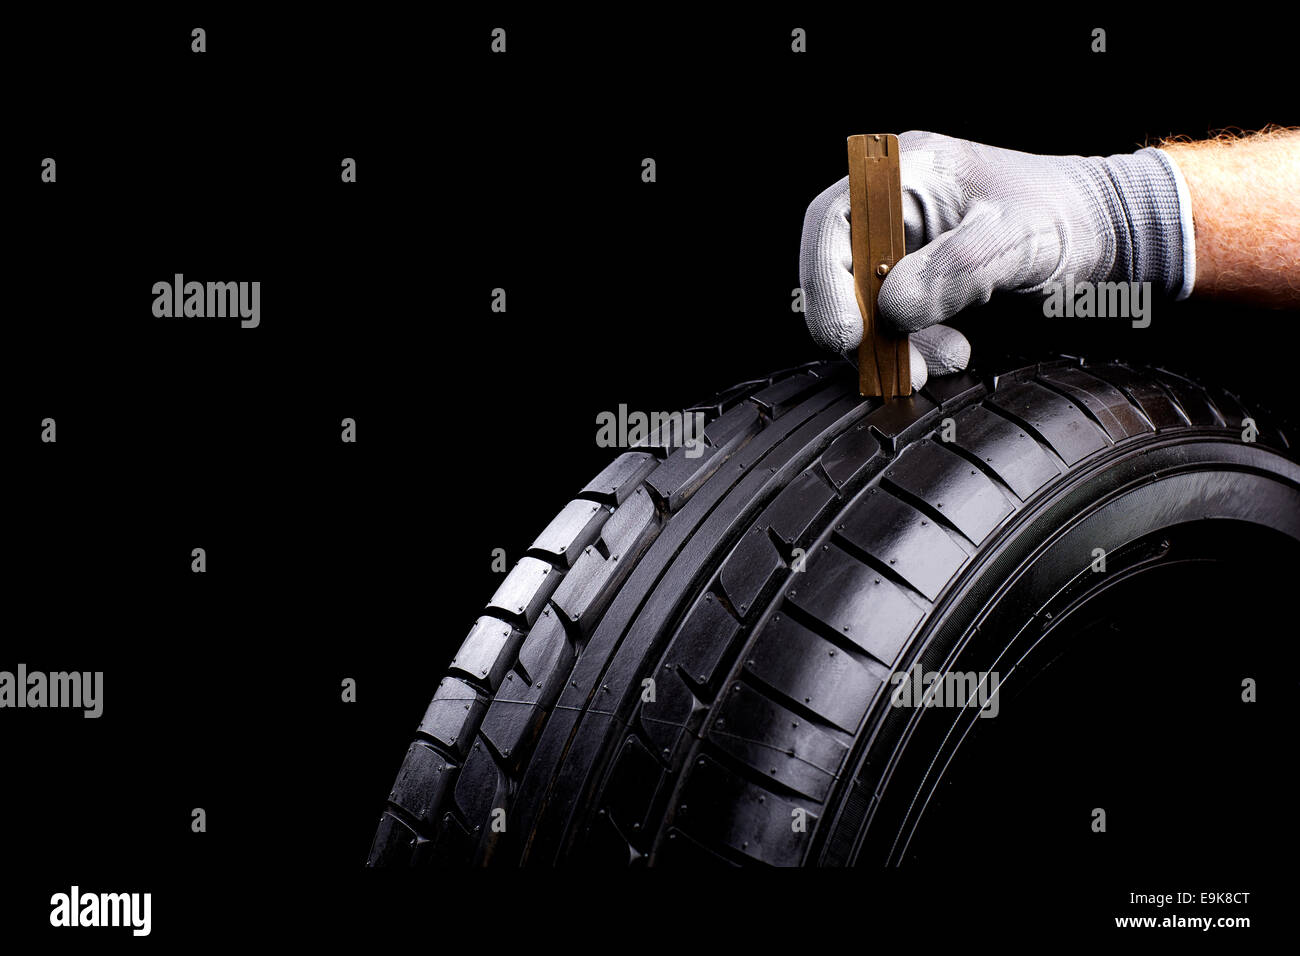 Profil messen mit masstab am Auto Reifen Stock Photo